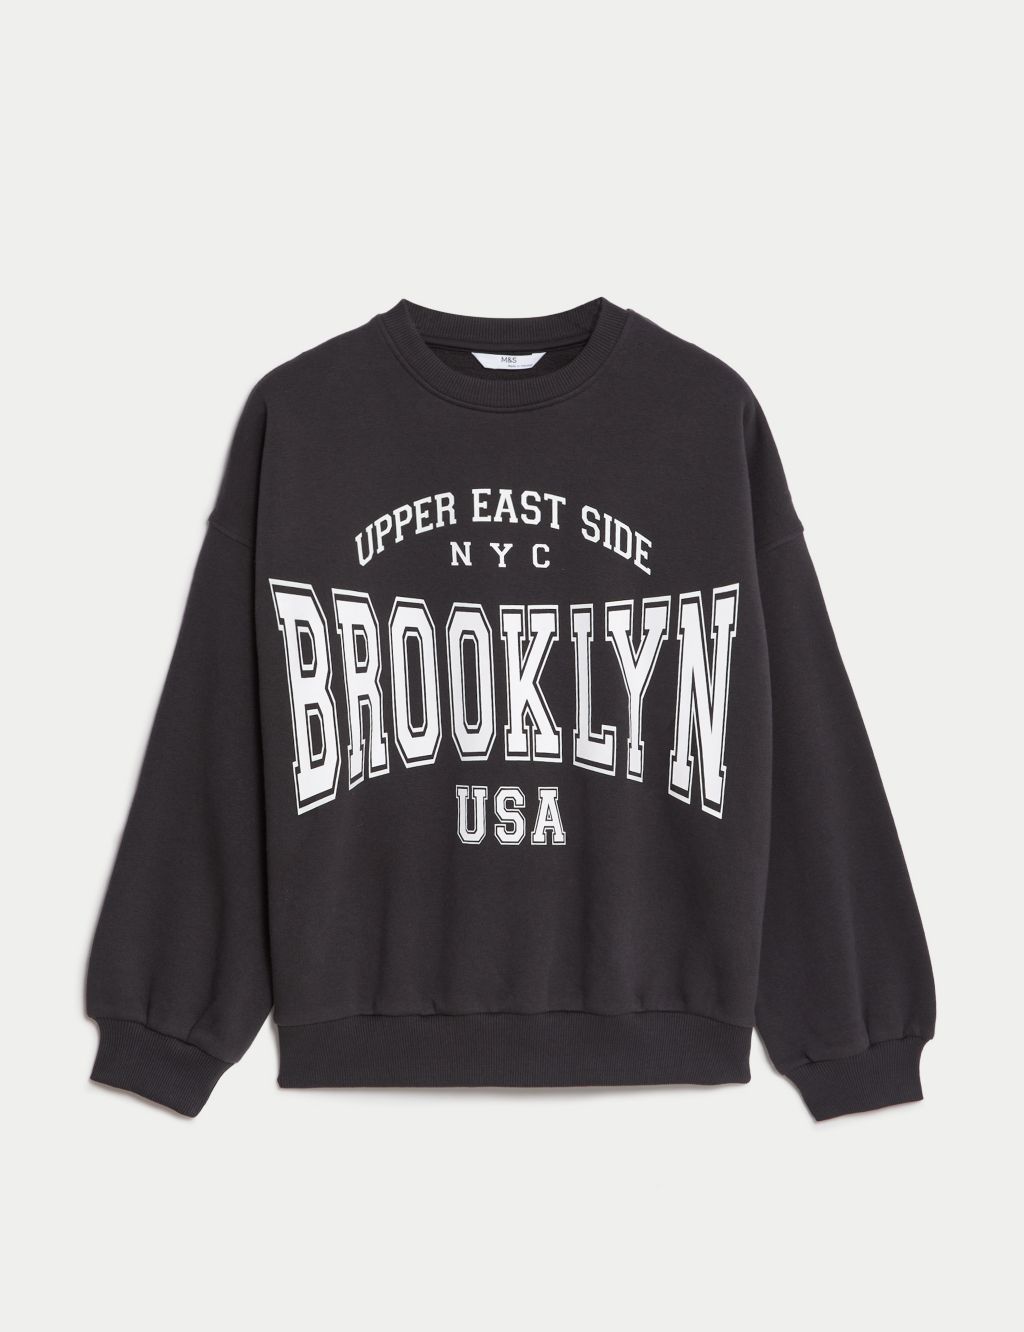 Cotton Rich Brooklyn Slogan Sweatshirt (6 - 16 Yrs) image 2